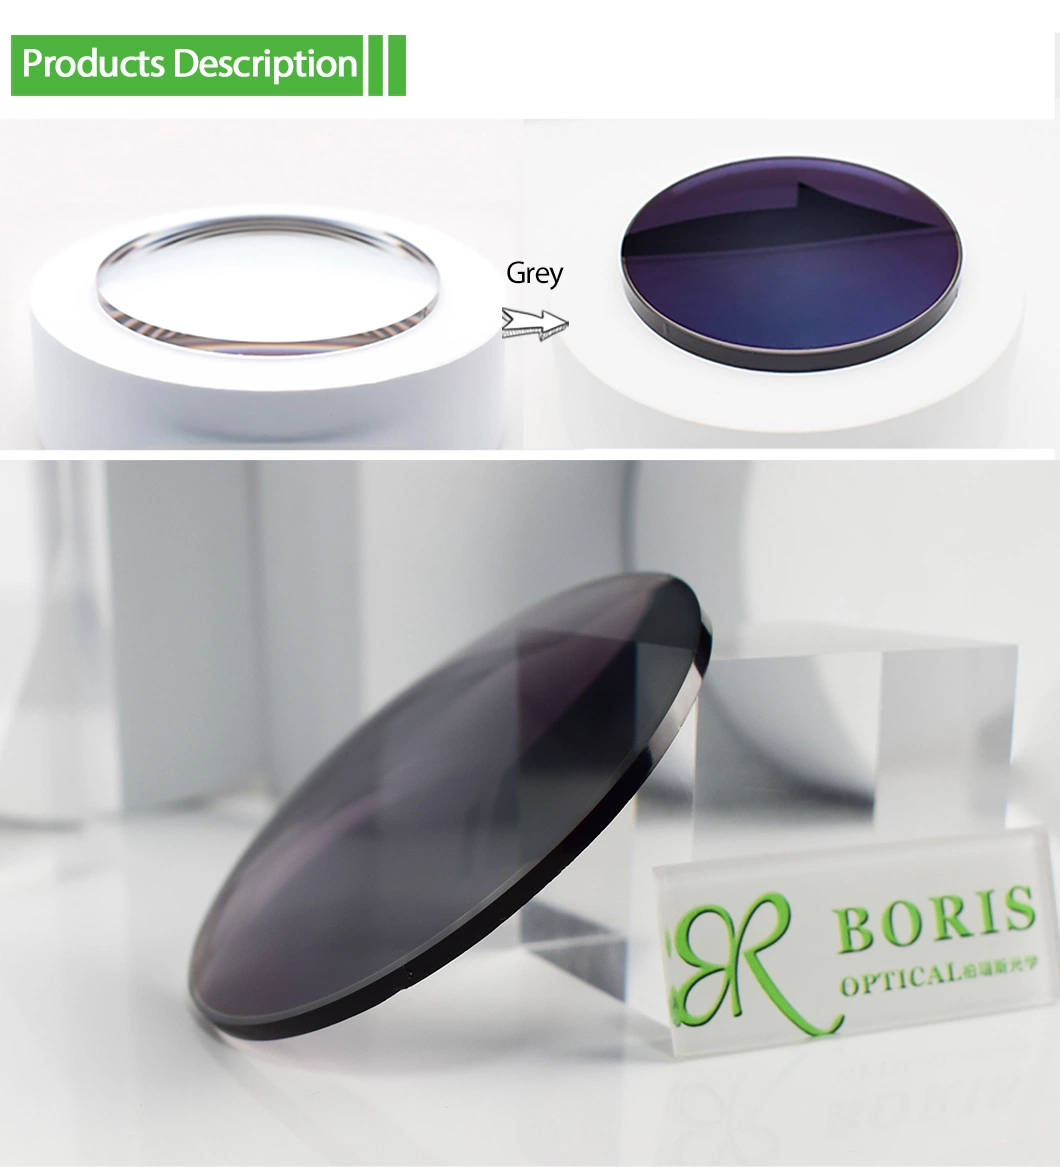 Hot Sale Spectacles Lens 1.67 Photochromic Grey Hmc Eyeglasses Plastic Lenses